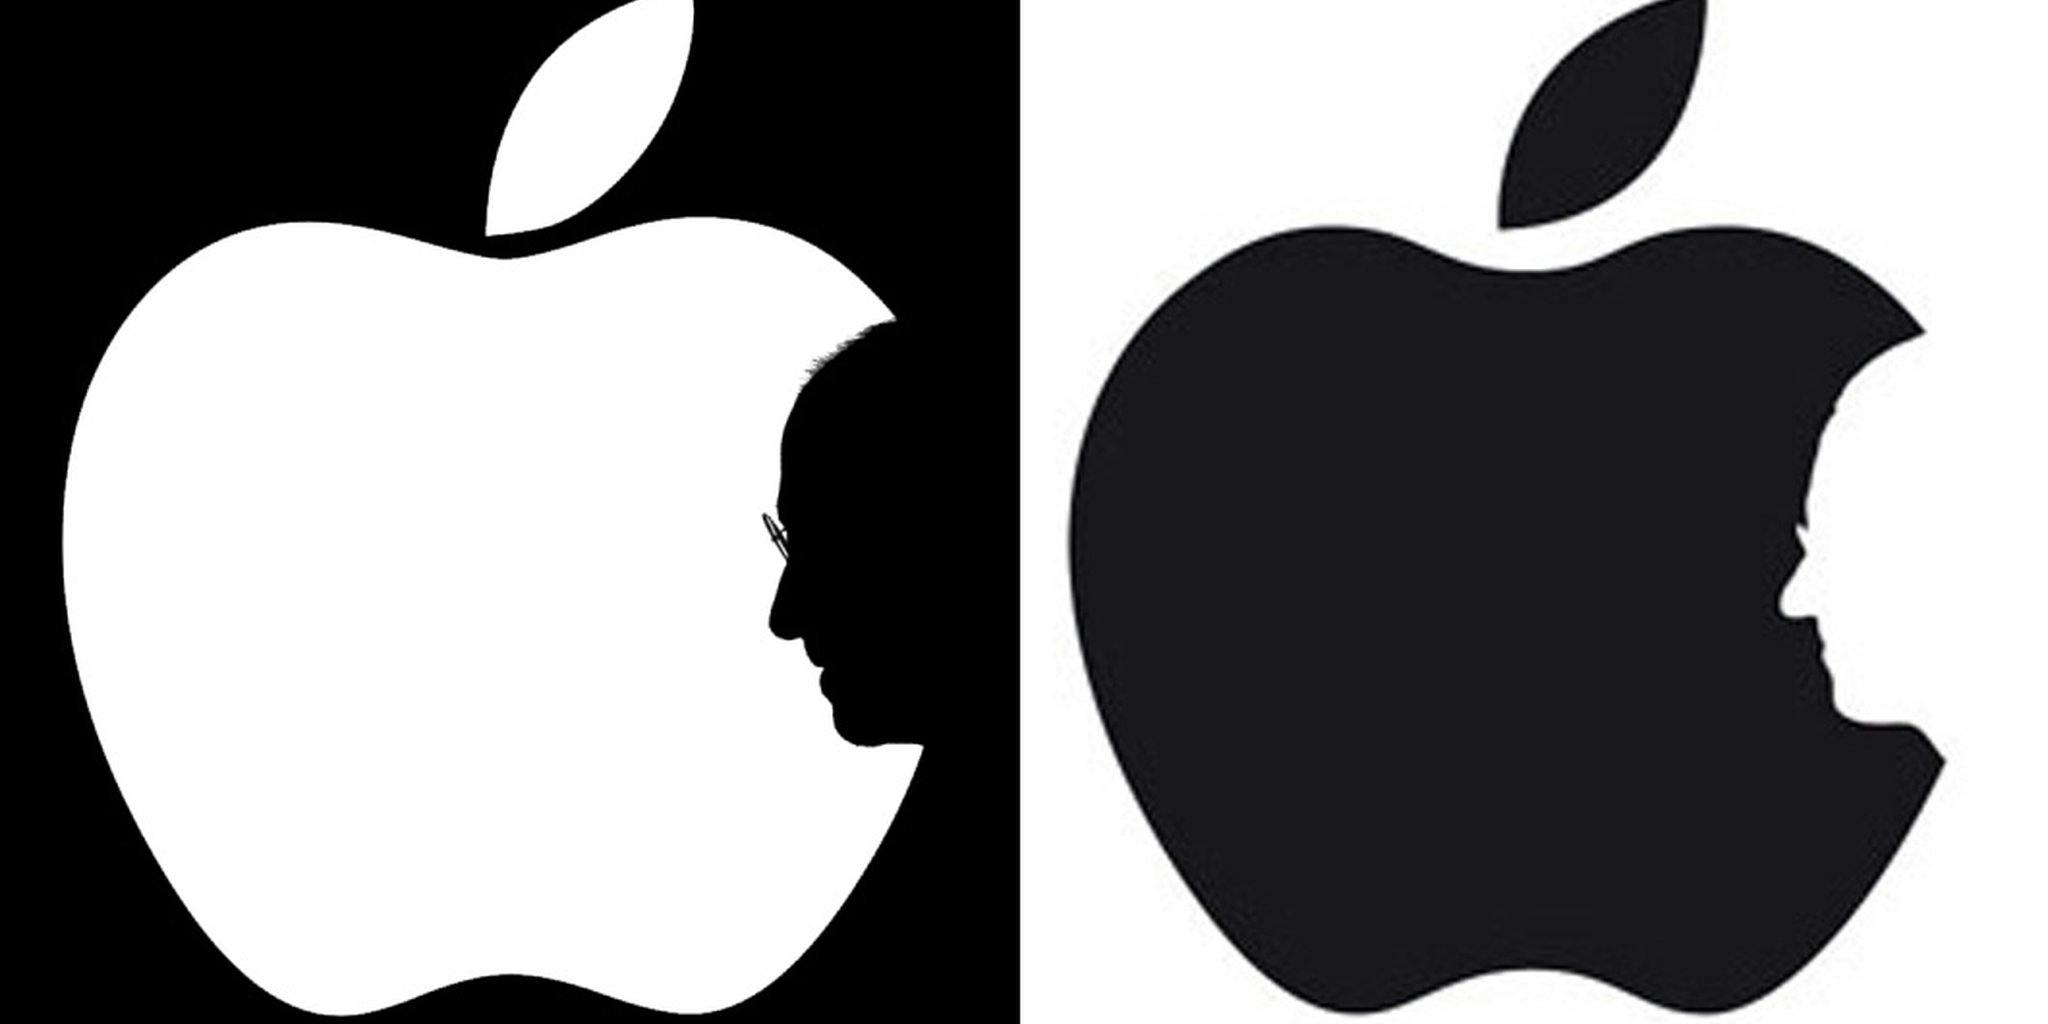 steve jobs apple logo